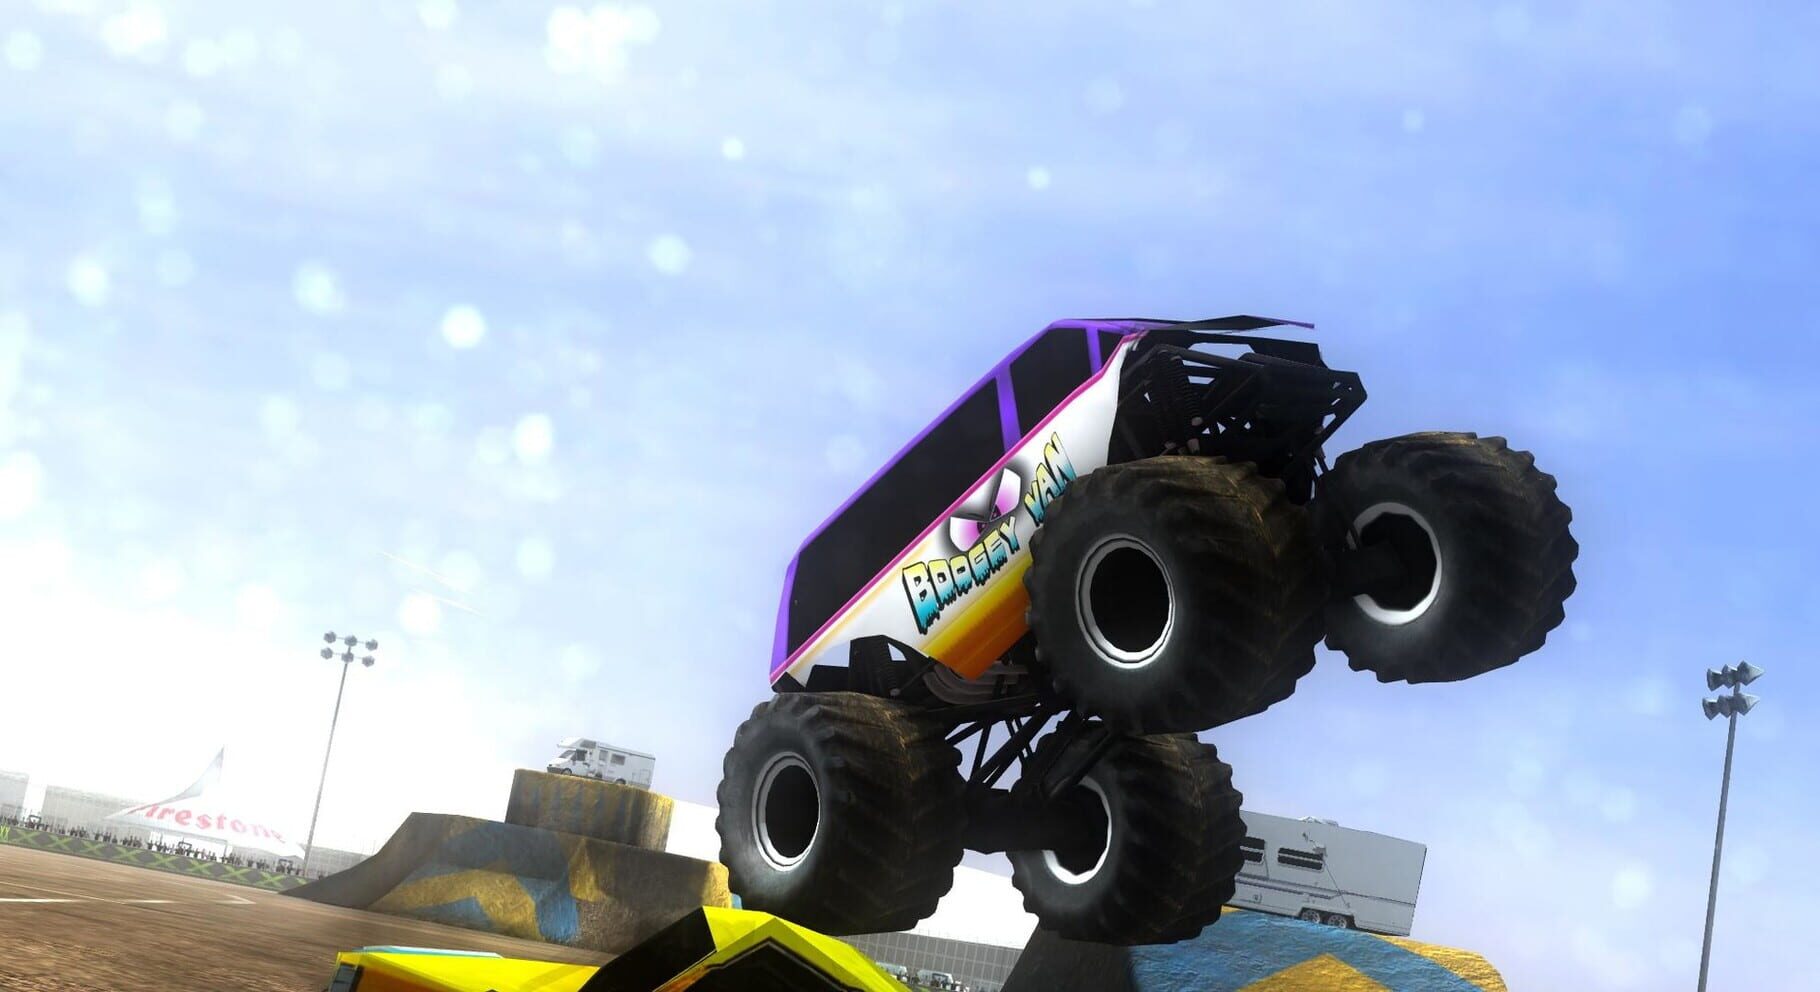 Monster Truck Destruction™ screenshots